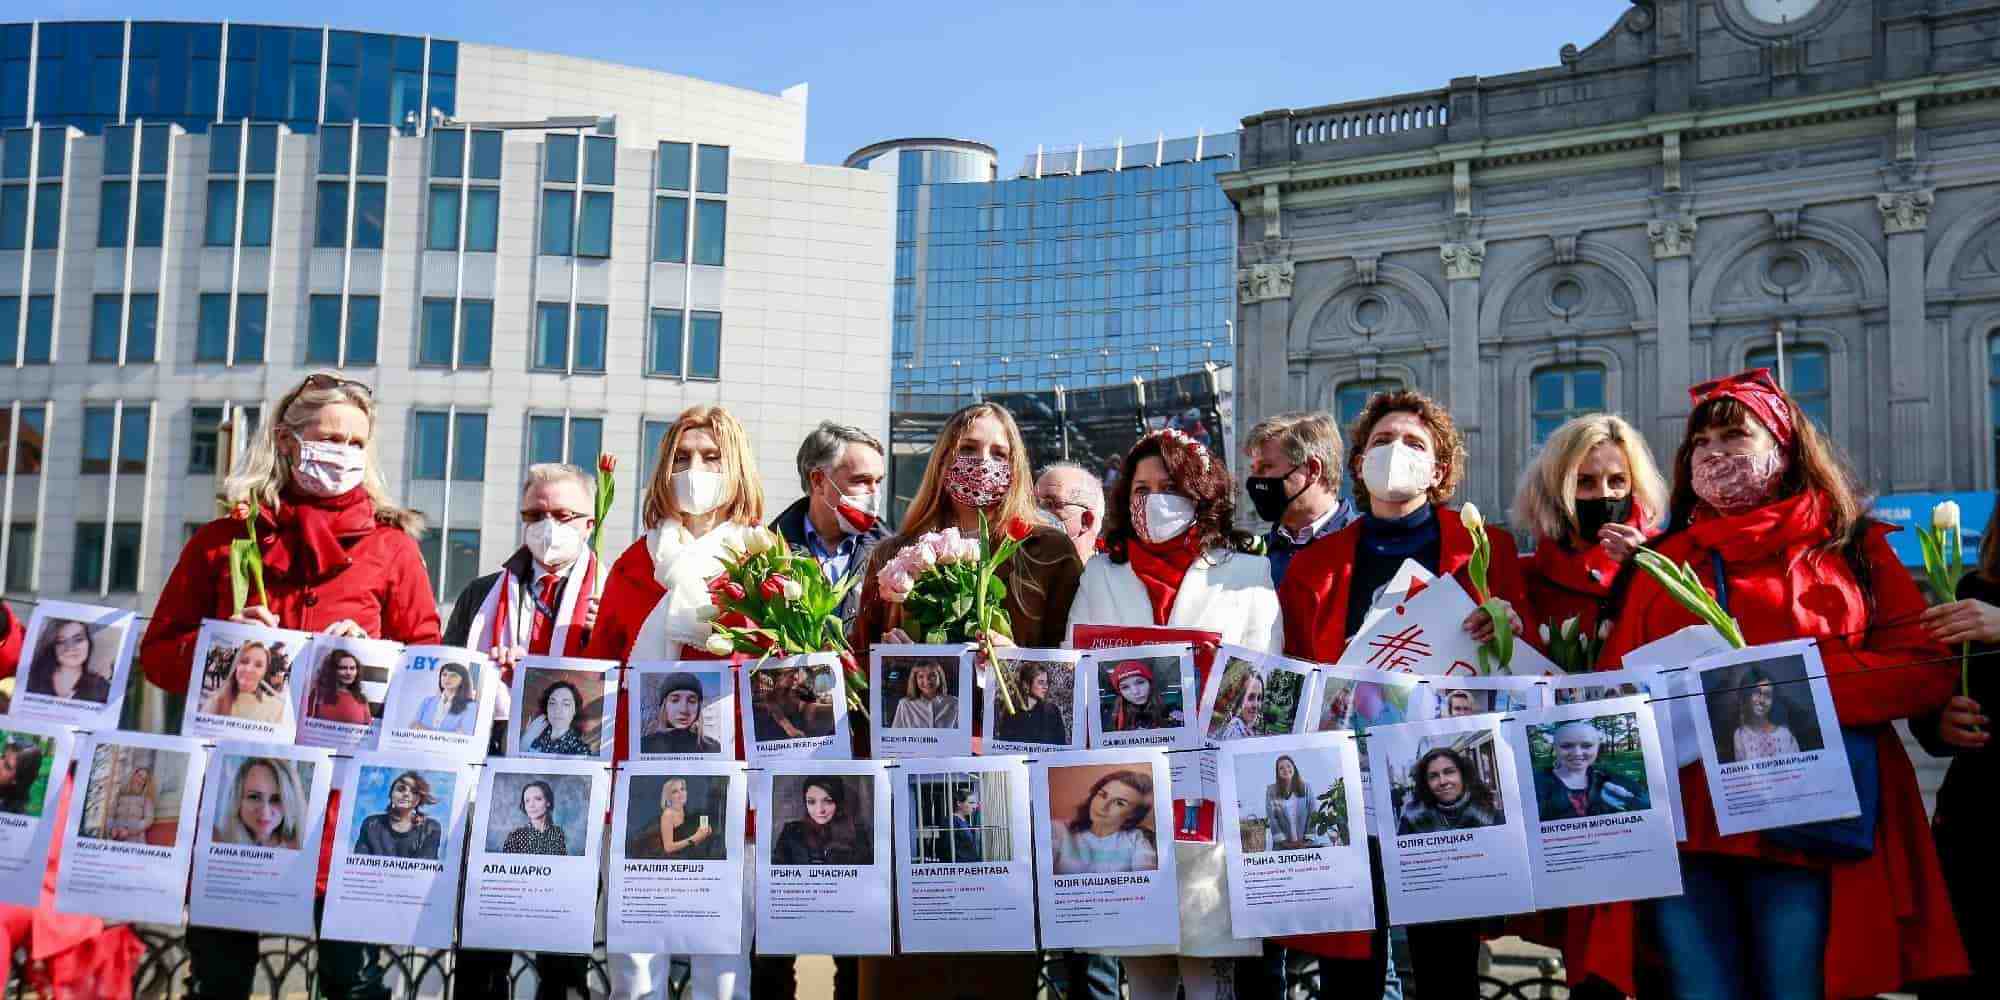 Διαδήλωση γυναικών από Πολωνία και Λευκορωσία για τις αμβλώσεις μπροστά στο κτίριο της Ευρωβουλής στις Βρυξέλλες